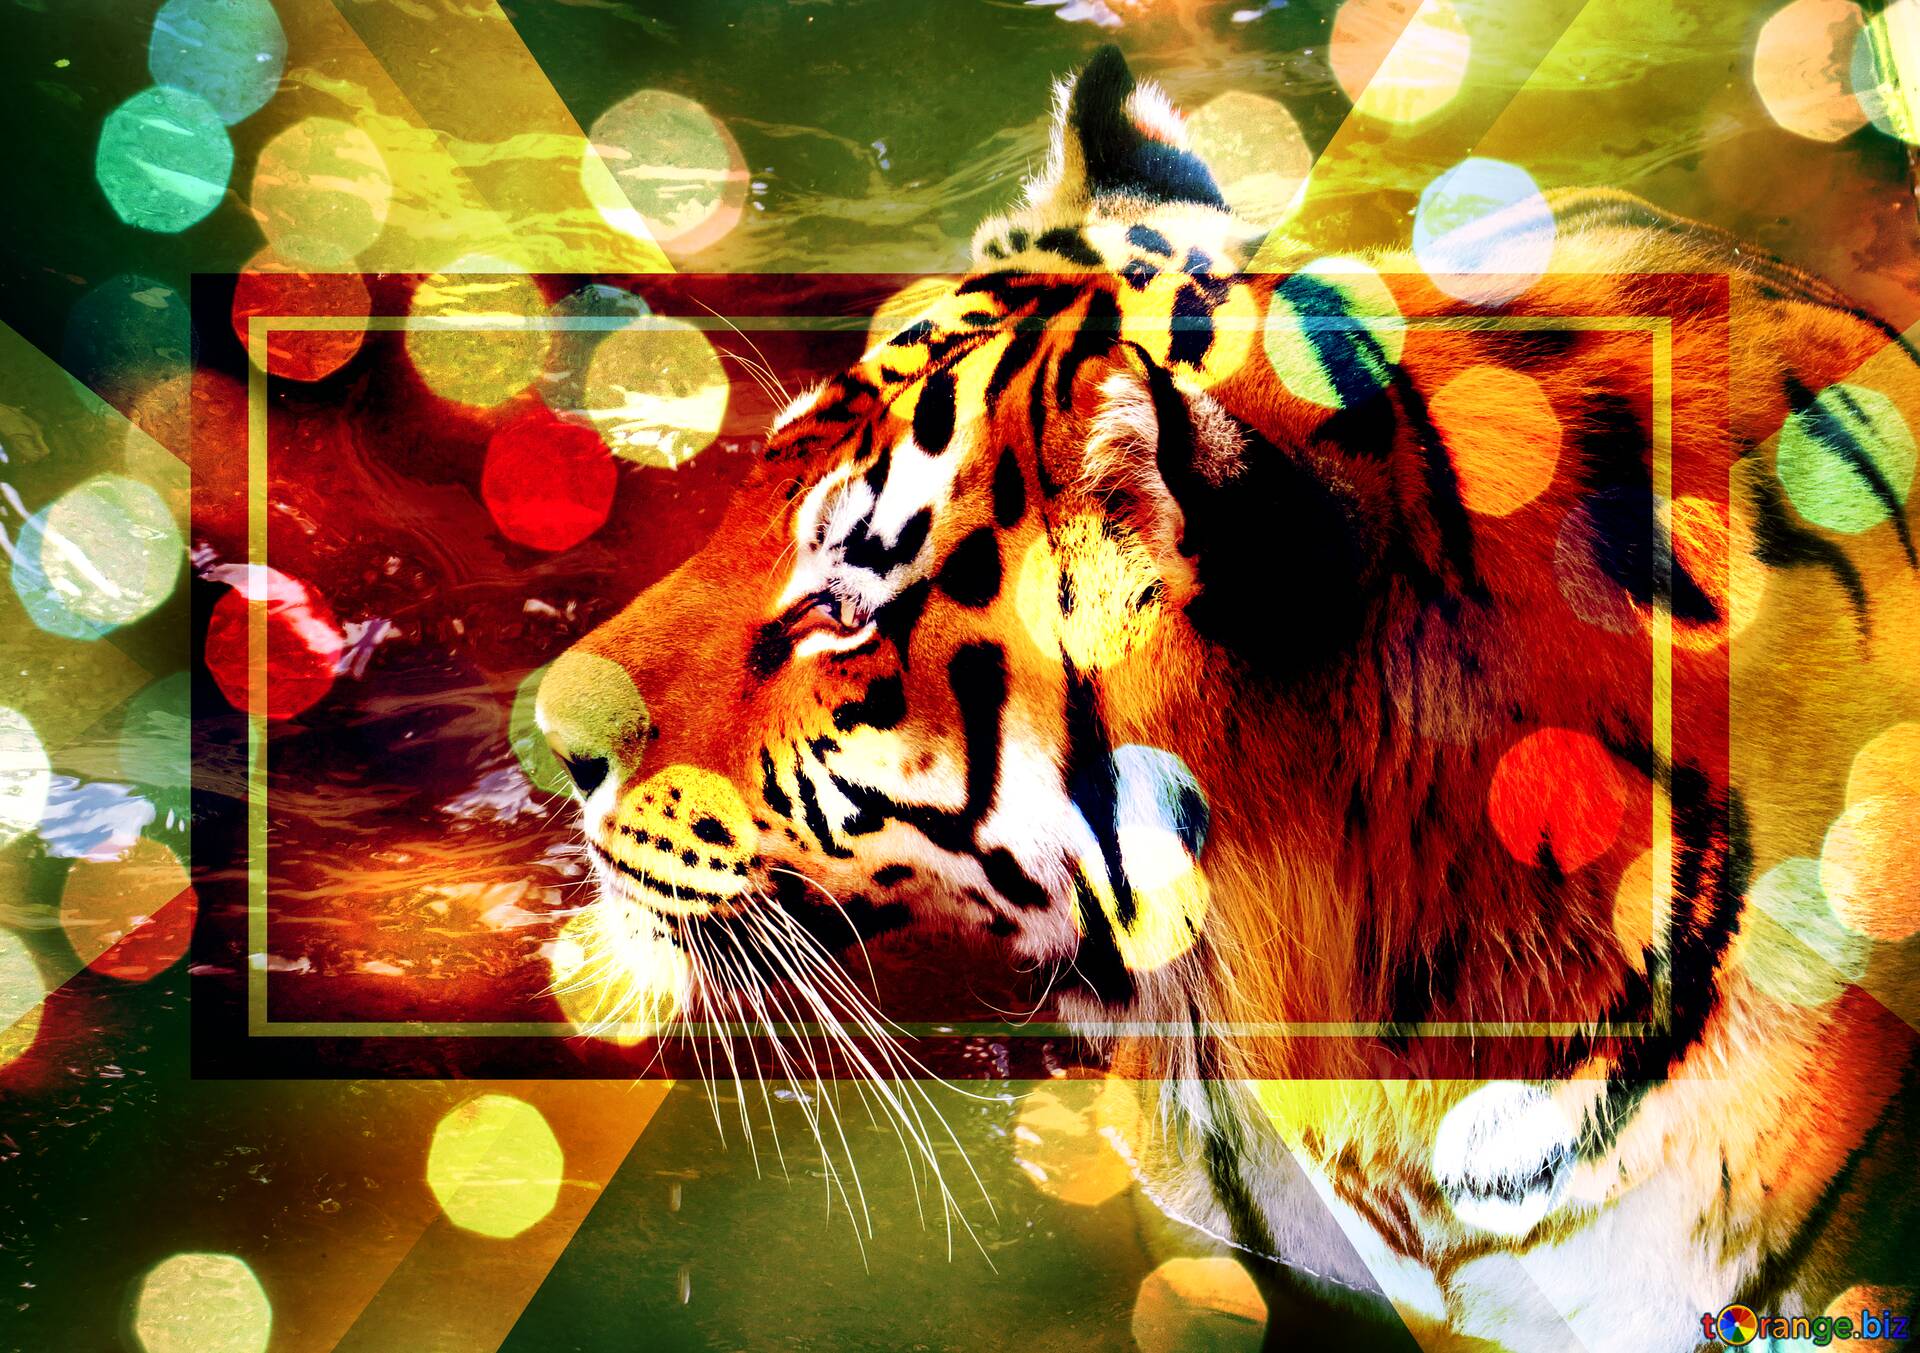 Đón chào bạn đến với bức ảnh hổ đẹp lung linh nhất mà bạn từng thấy! Hãy cùng chiêm ngưỡng vẻ đẹp dạng đuôi vàng và chính xác của hổ trong bức hình này, và cảm nhận sức mạnh thiên nhiên của loài động vật đầy sức sống này bằng những màu sắc tươi sáng và sinh động. 